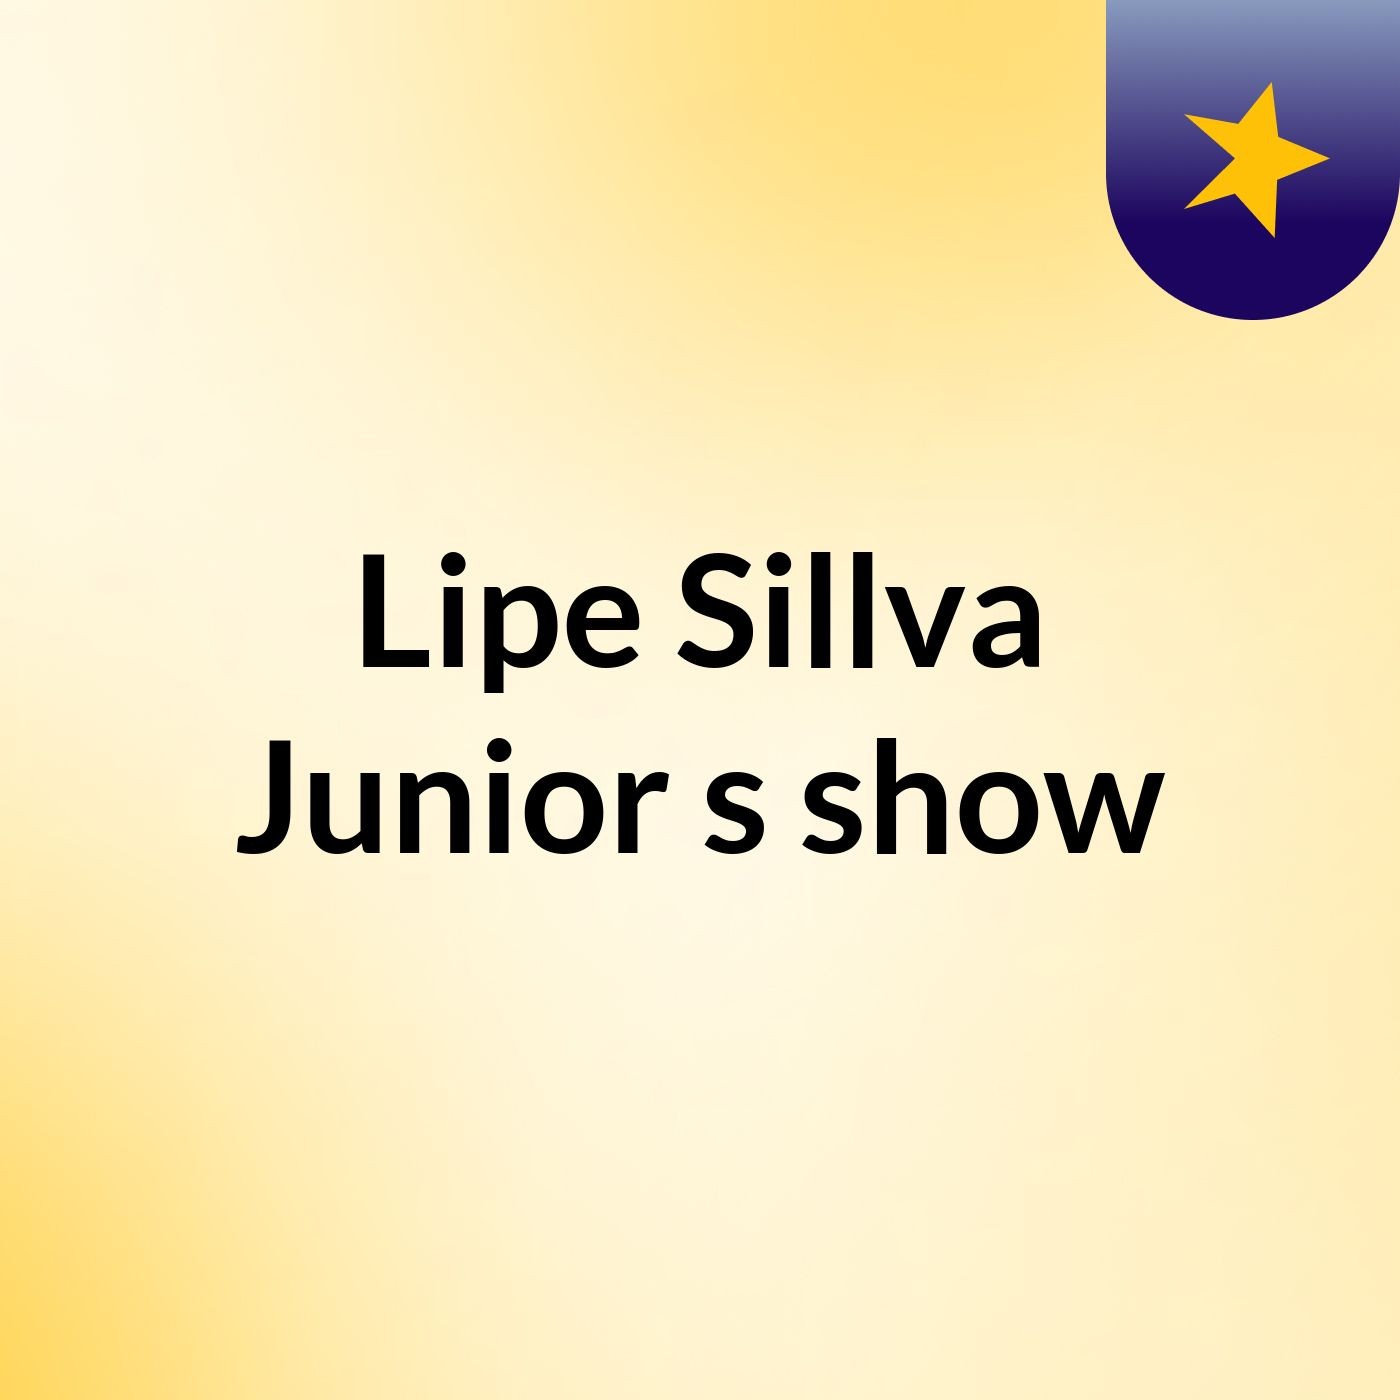 Lipe Sillva Junior's show